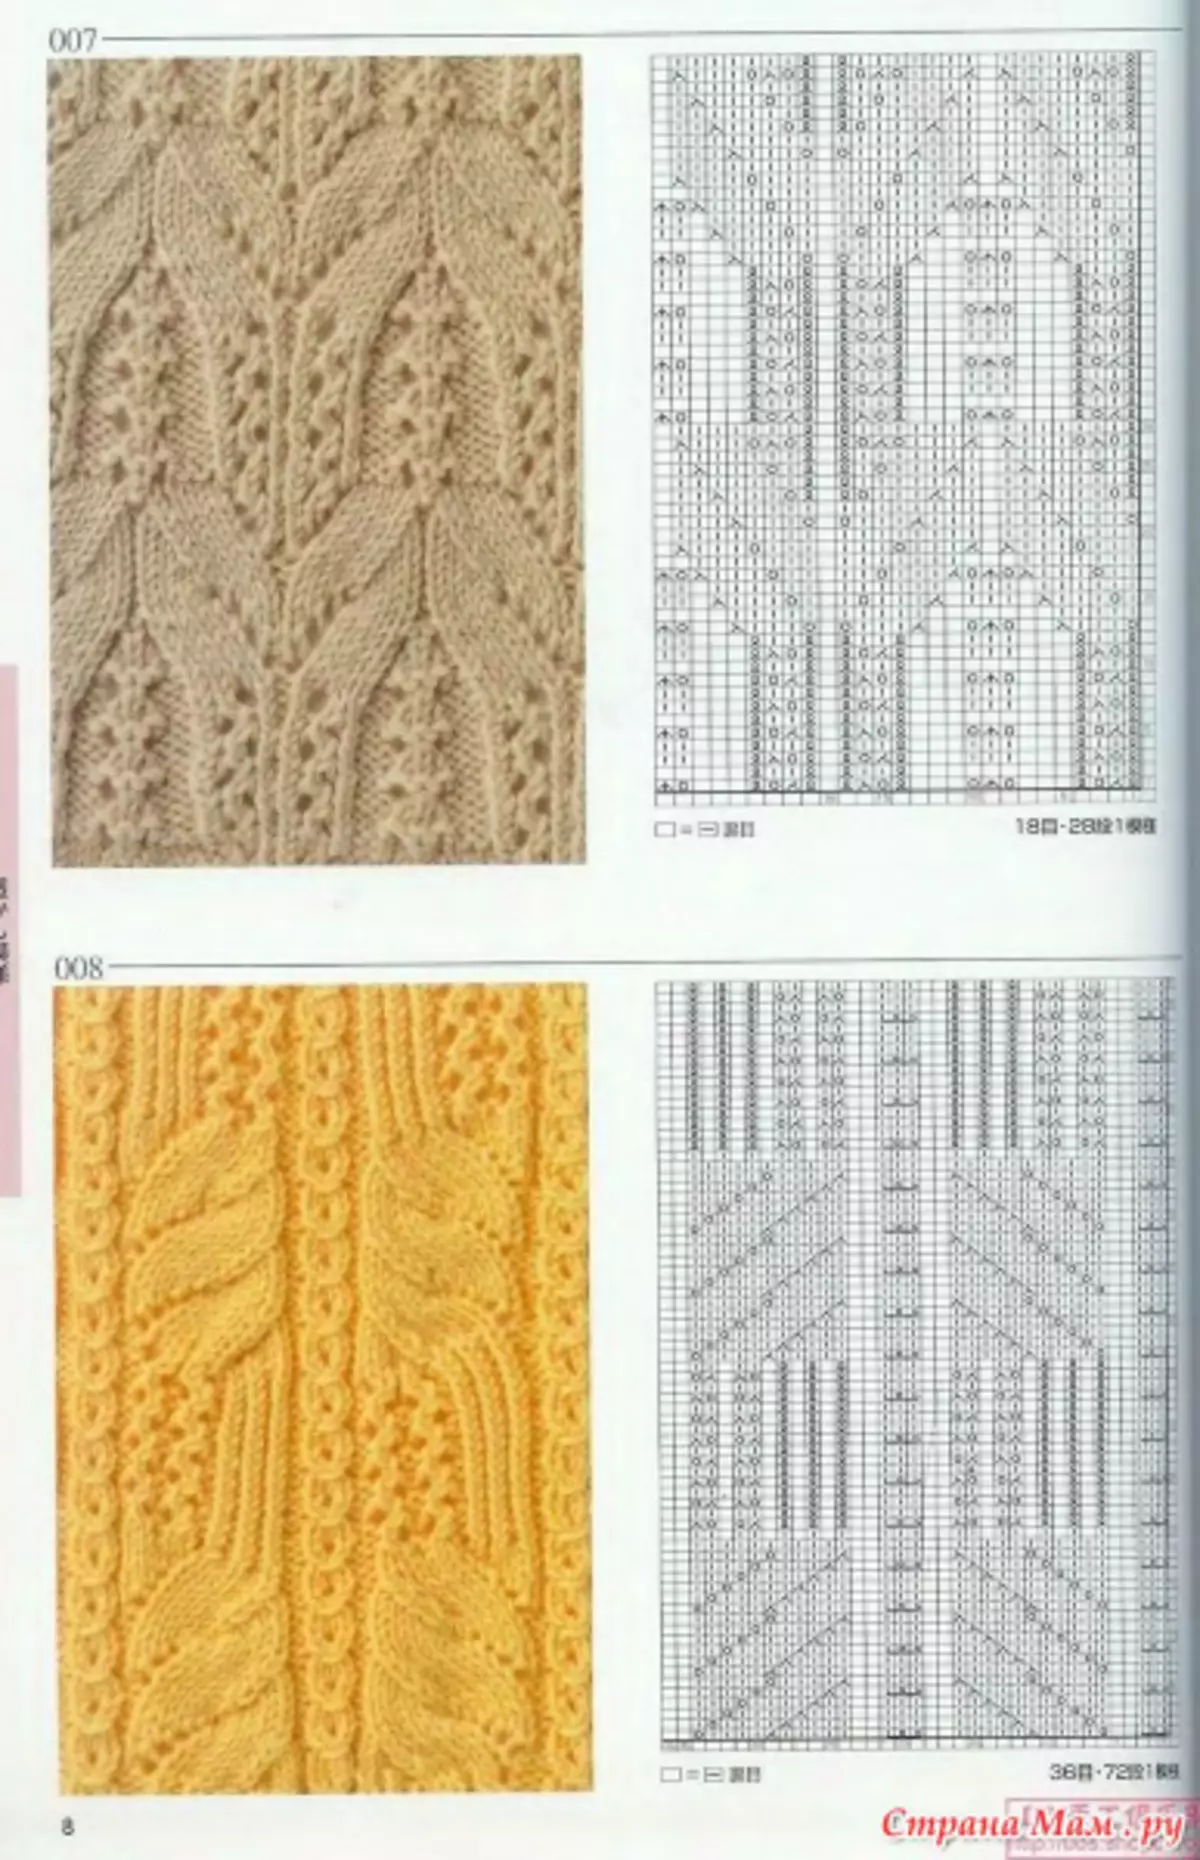 Обрасци плетења са описима: прелепе шеме олакшања и норвешких образаца са видео лекцијама